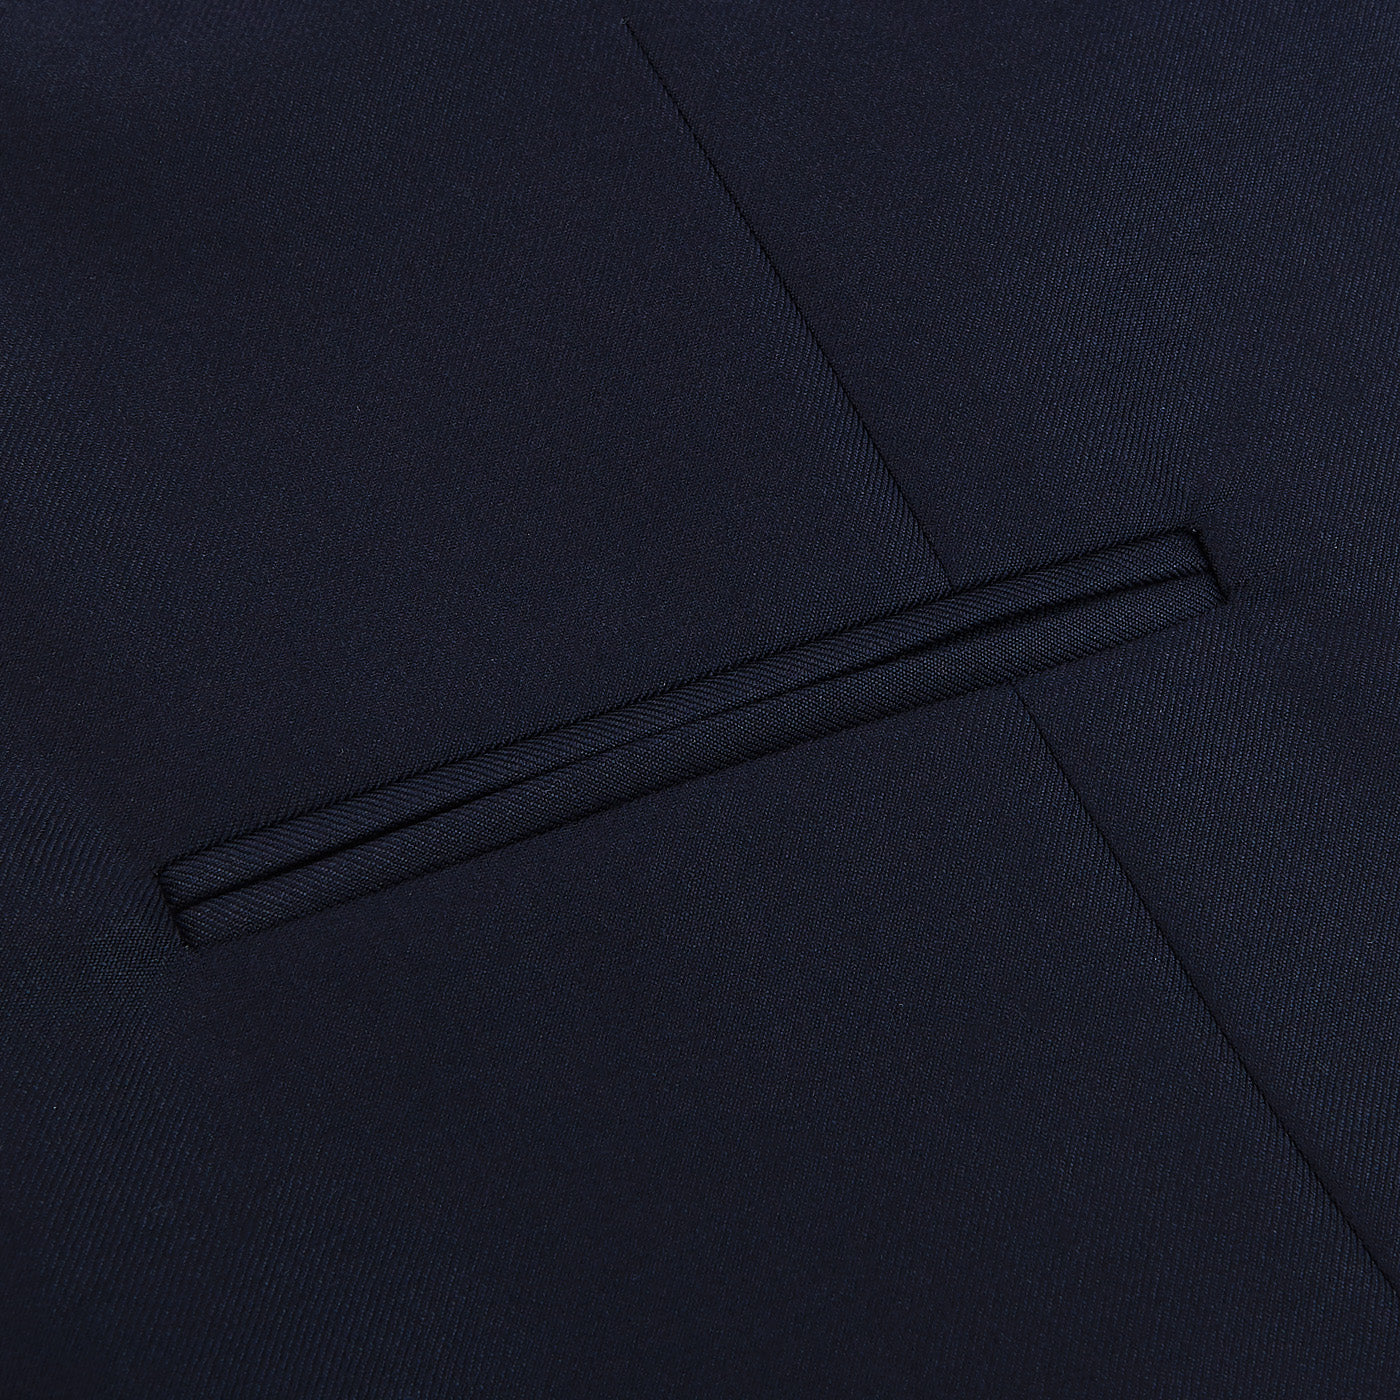 Studio 73 Navy Blue Super 130s Wool Suit Waistcoat Pocket